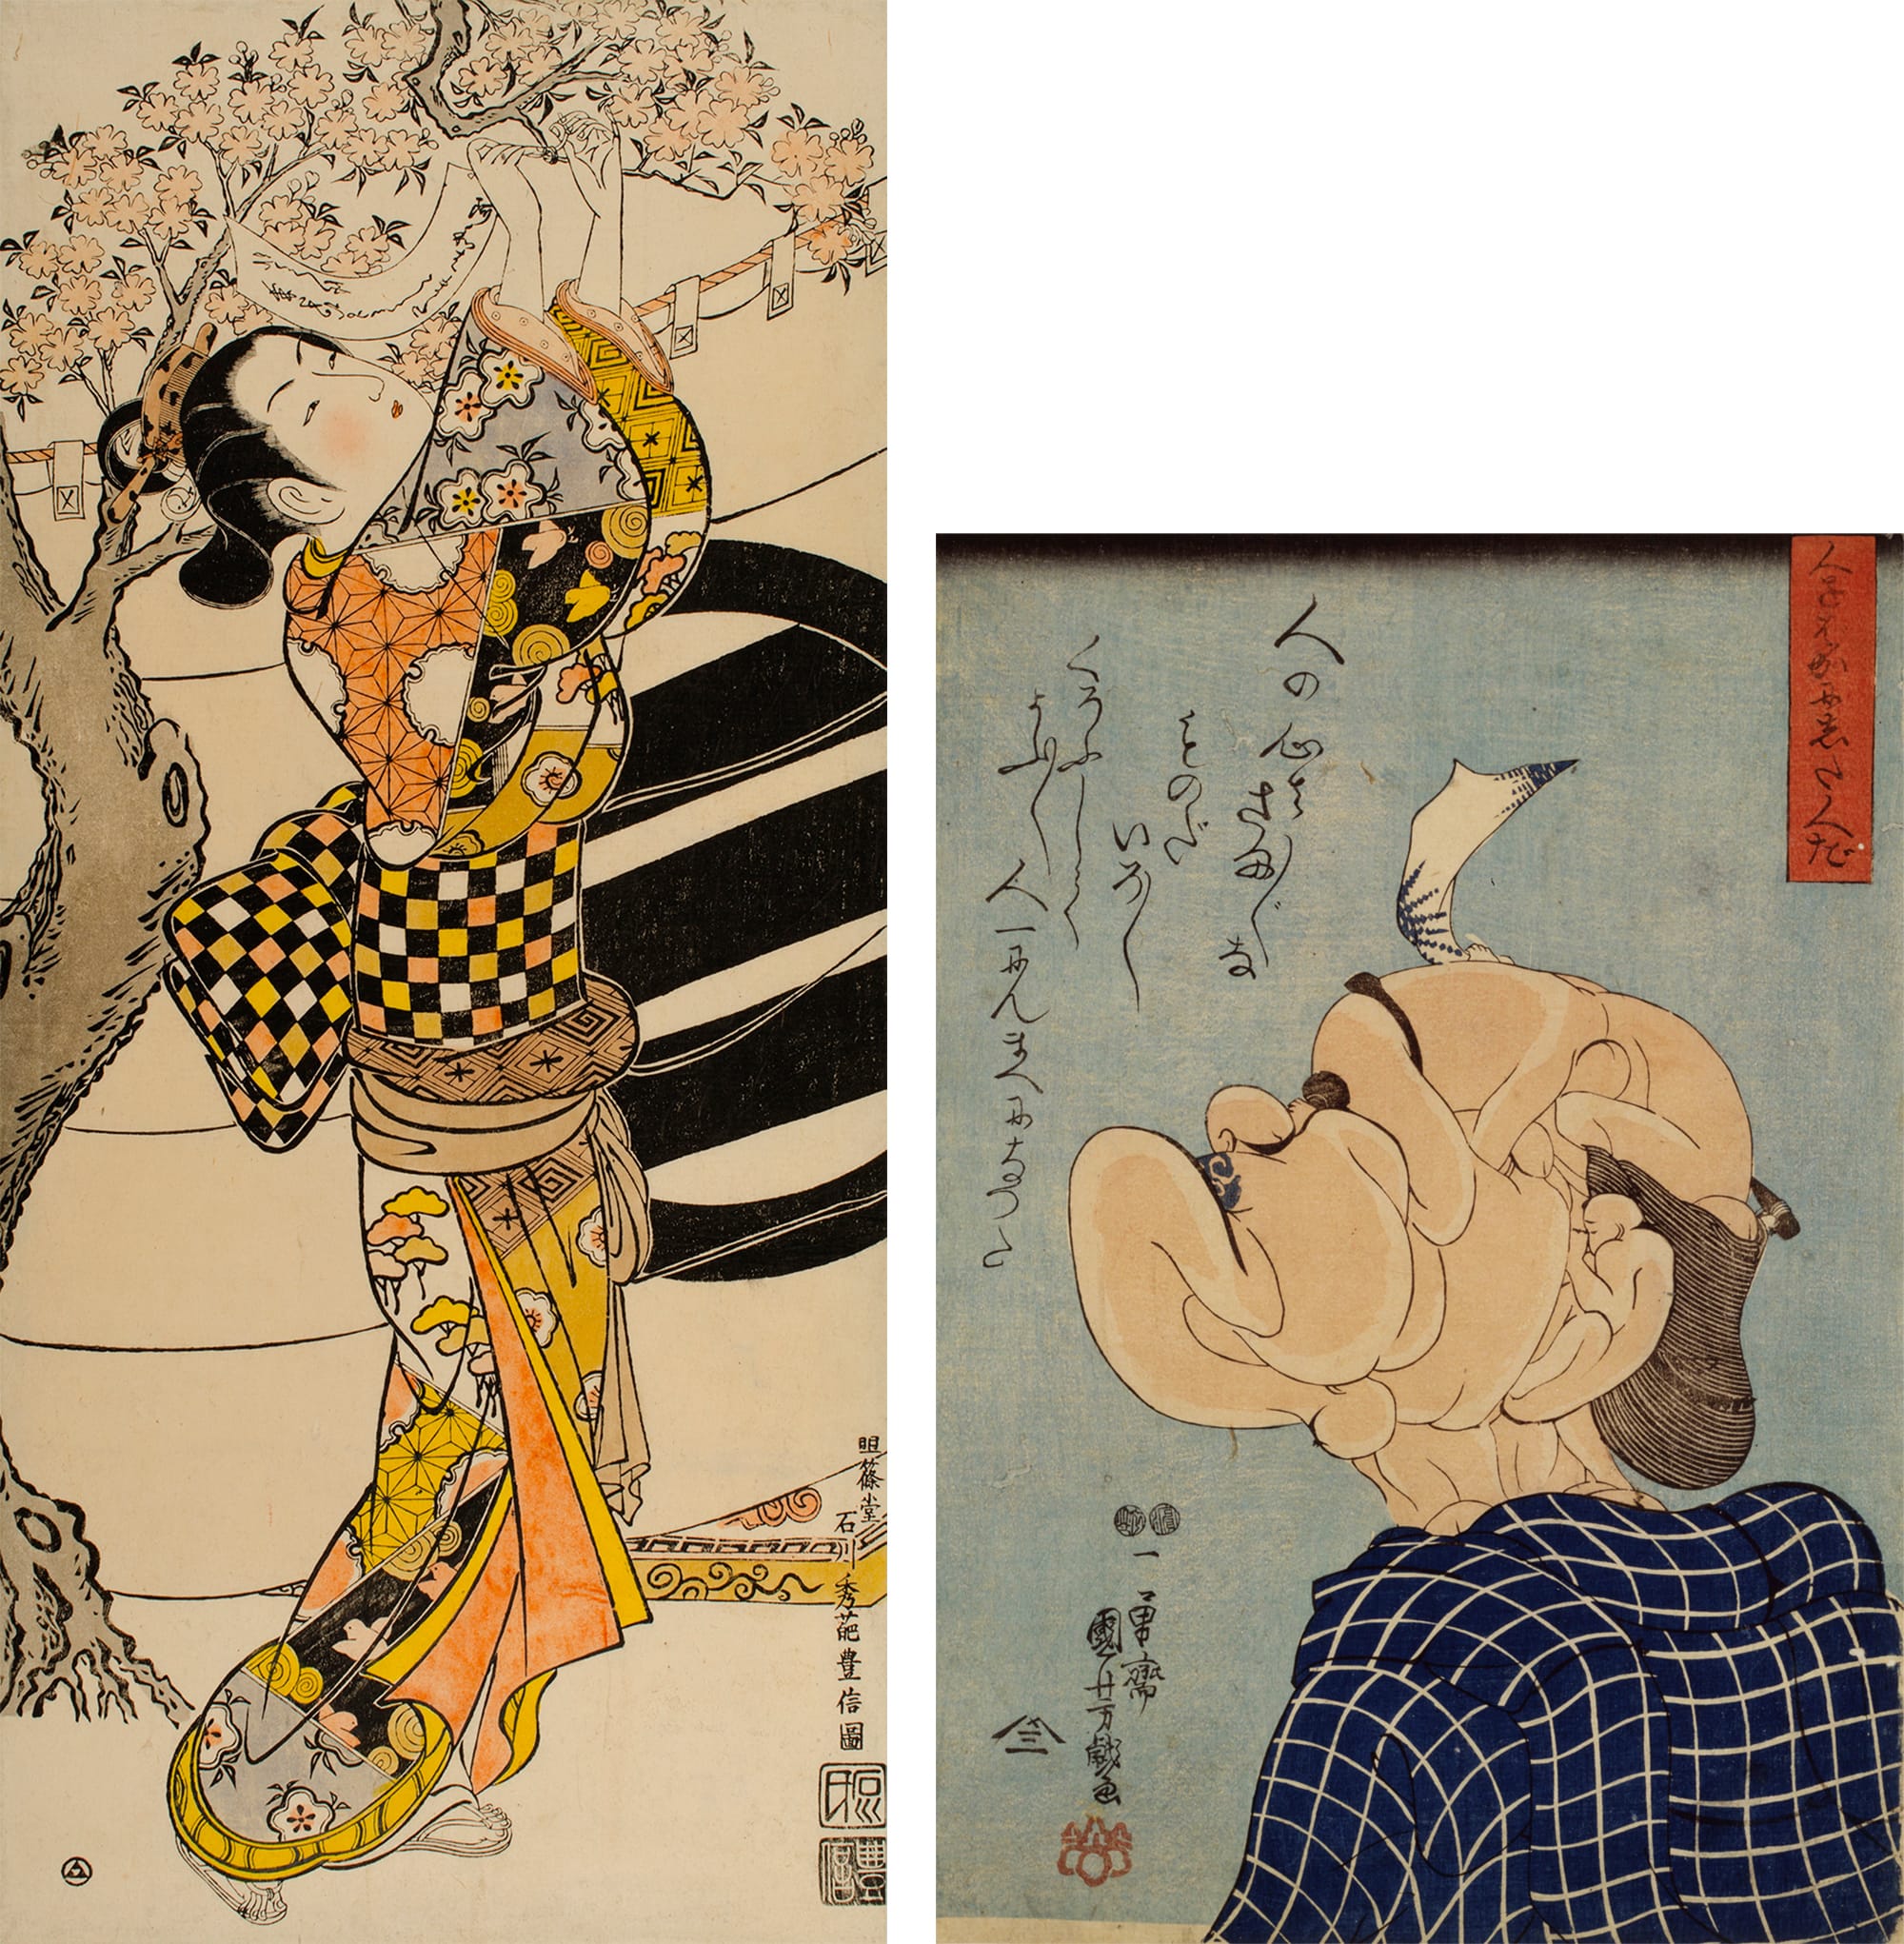 圖左:重要文化財產 石川豐信的「花下美人」 大大判 紅繪（浮世繪的彩色技法） 延享期 (1744-48) 平木浮世繪財團 《美人畫》浮世繪的主流，也是當時的時尚潮流的傳播媒介。 圖右:歌川國芳「那些愚弄人的人」 大判 錦繪 弘化4年(1847)左右 日本浮世繪博物館